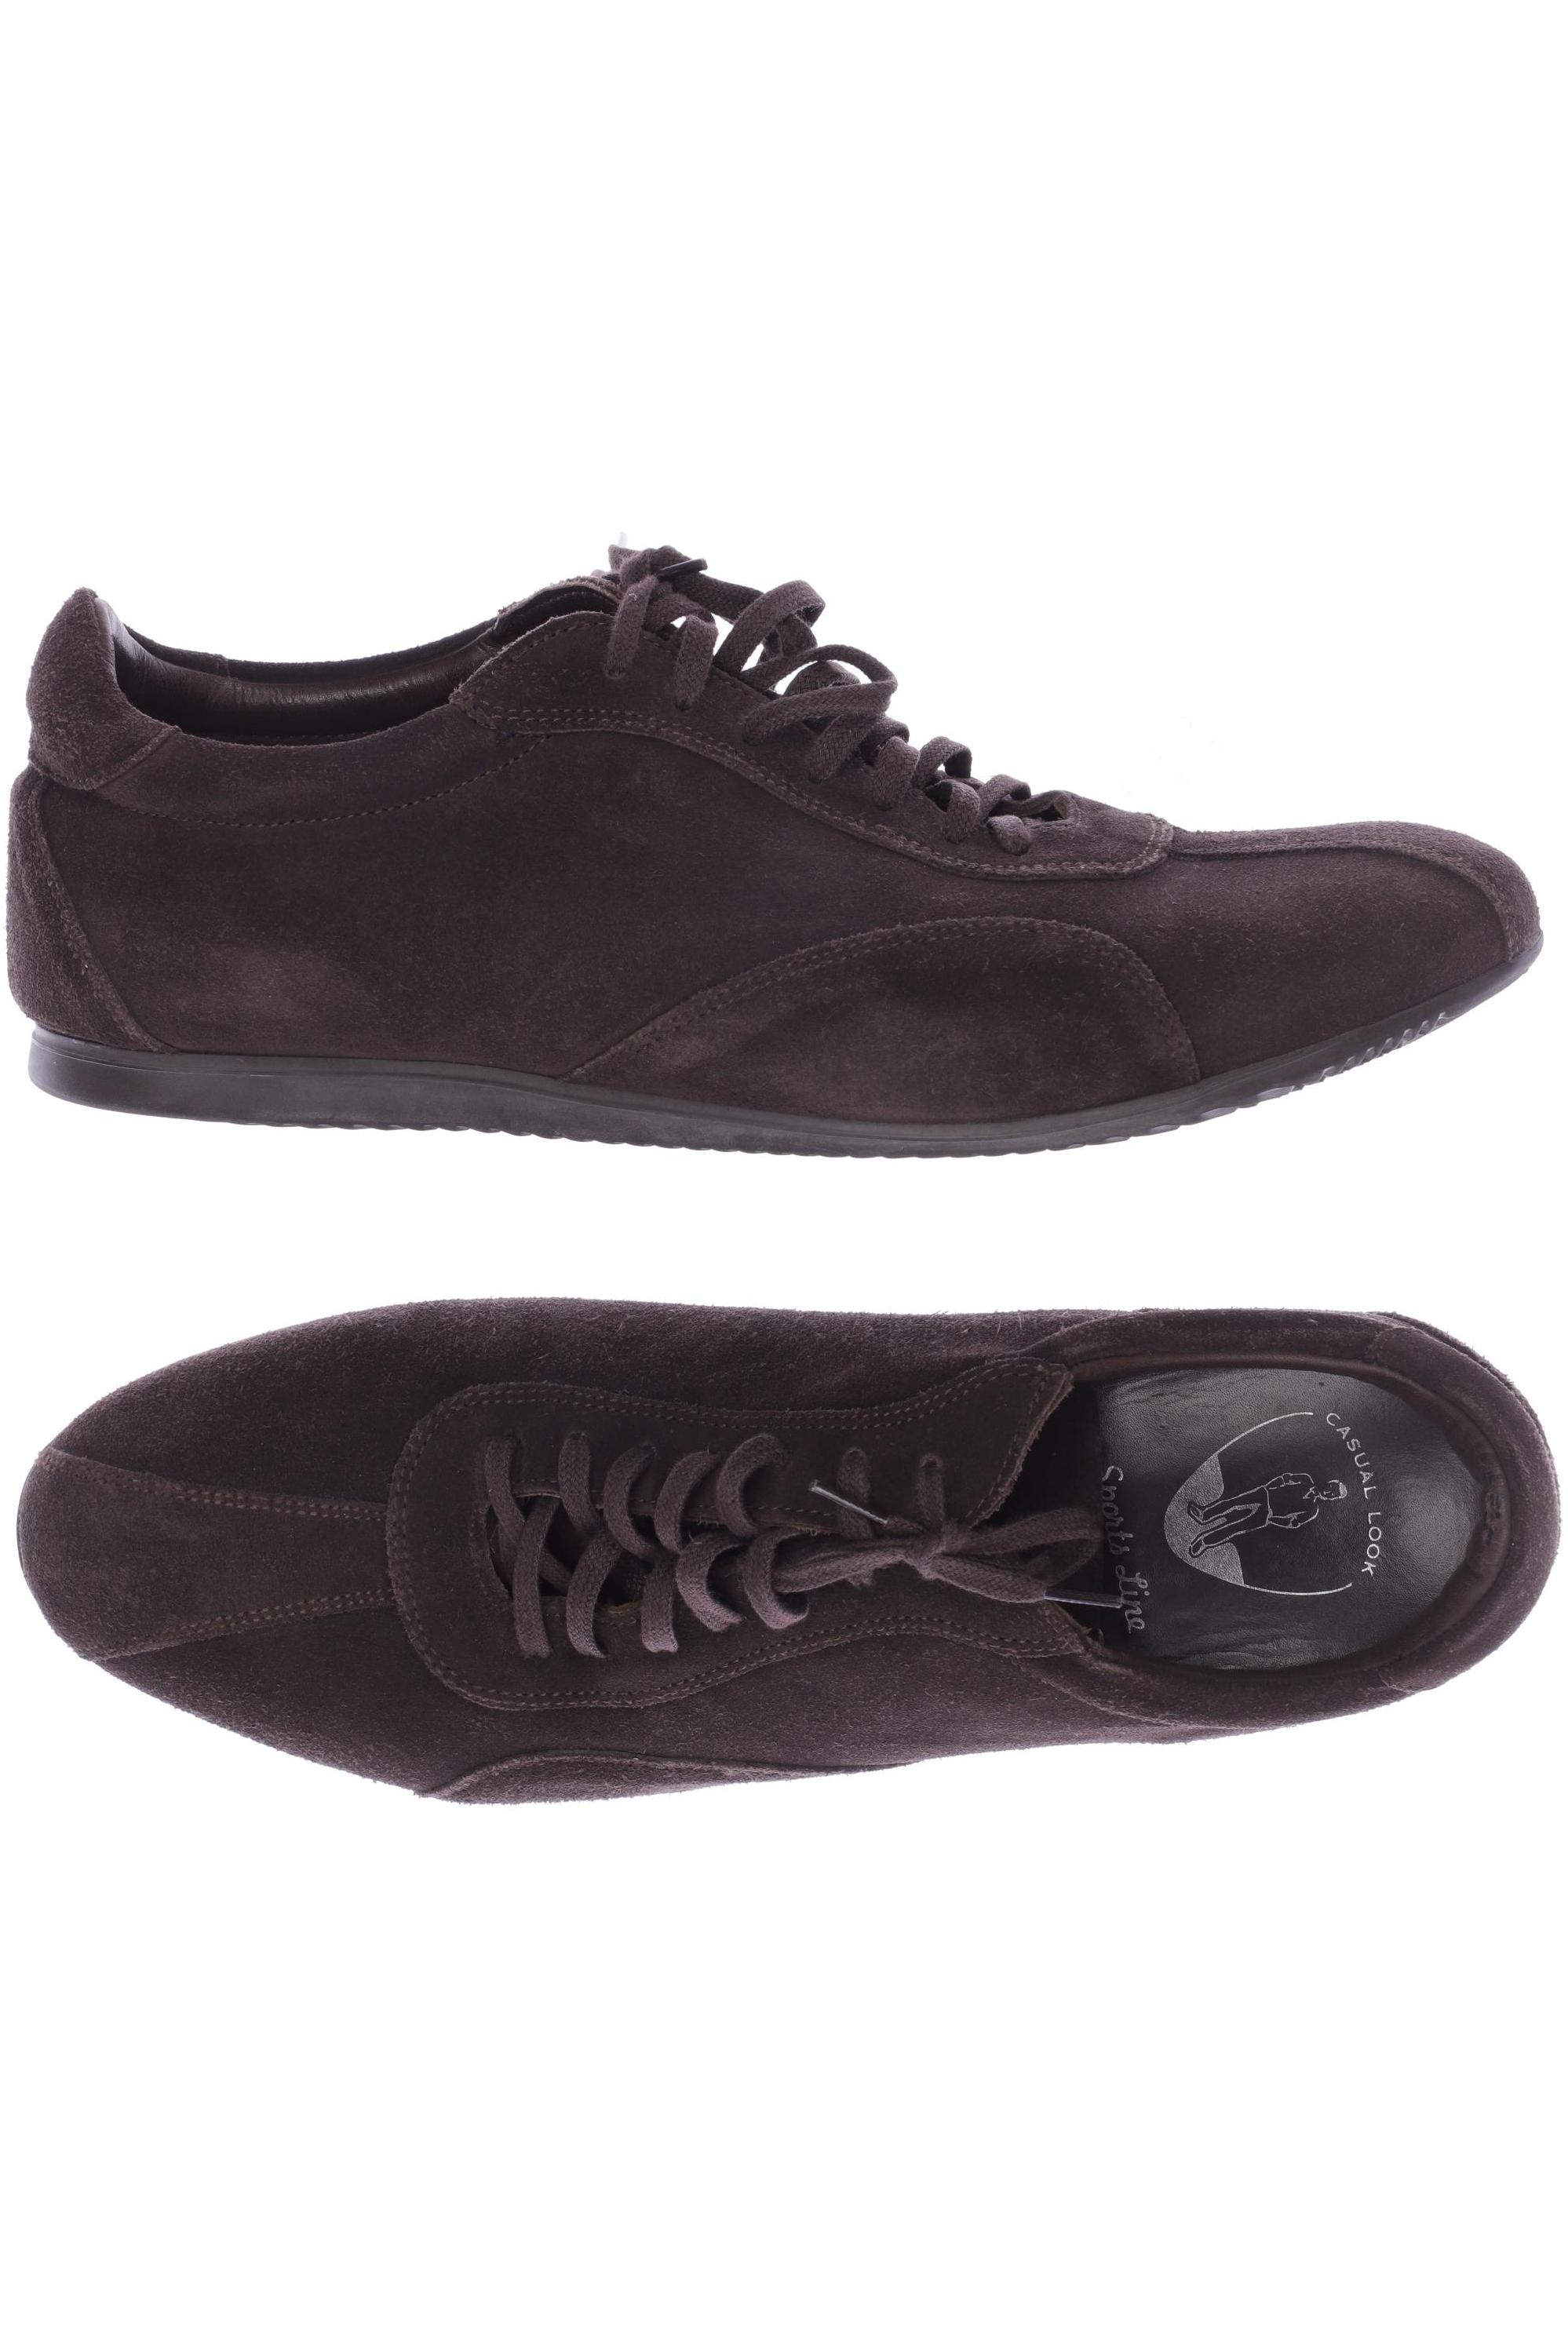 Comprar Online BAILARINAS DE PIEL baratos y de calidad de la marca LORENA  MASSÓ | Zapatos low cost | Calzado barato Shoes Size 35